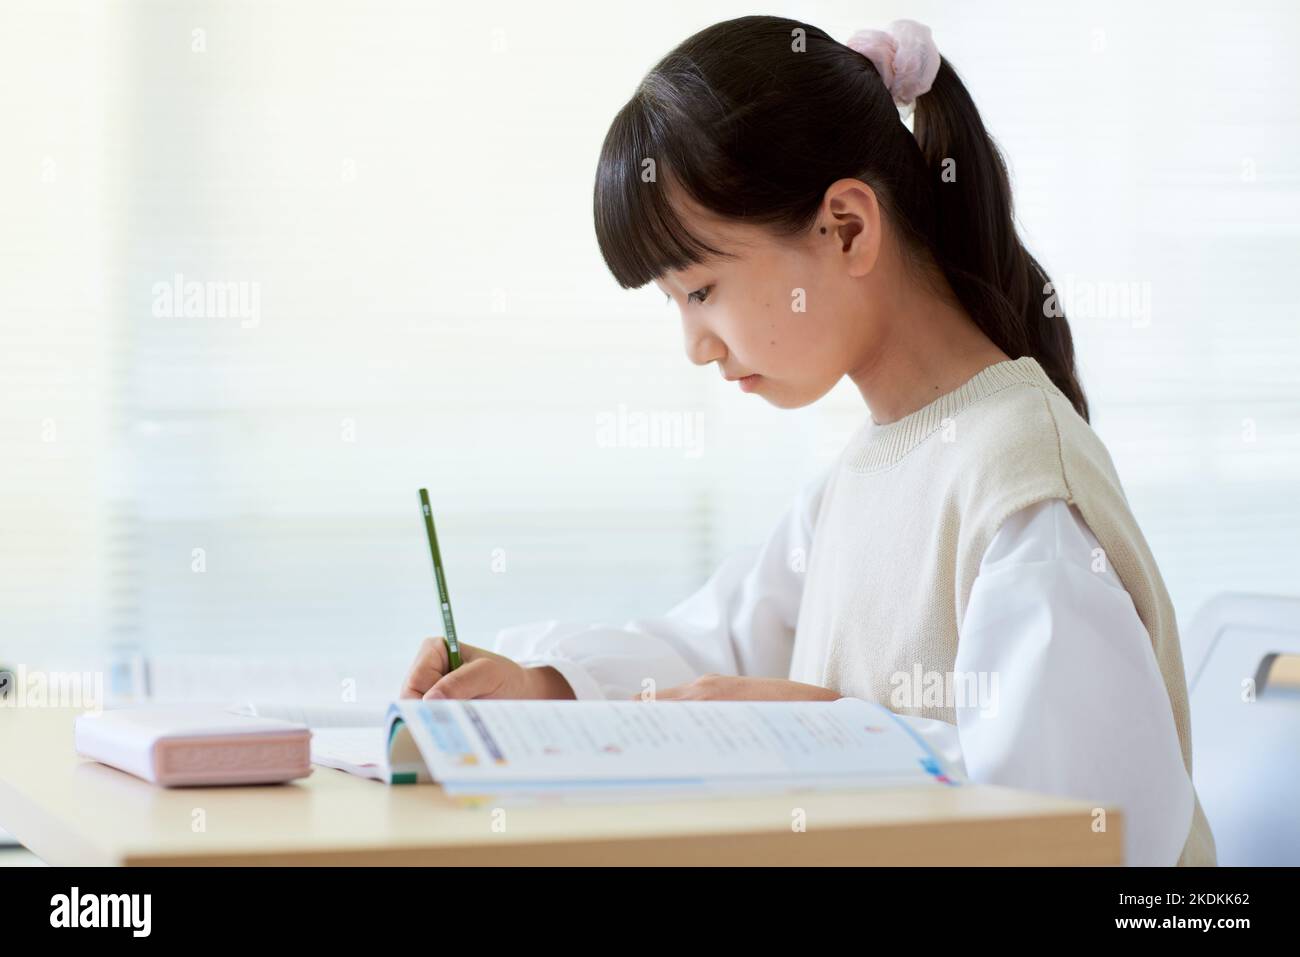 Japanese kid studying Stock Photo